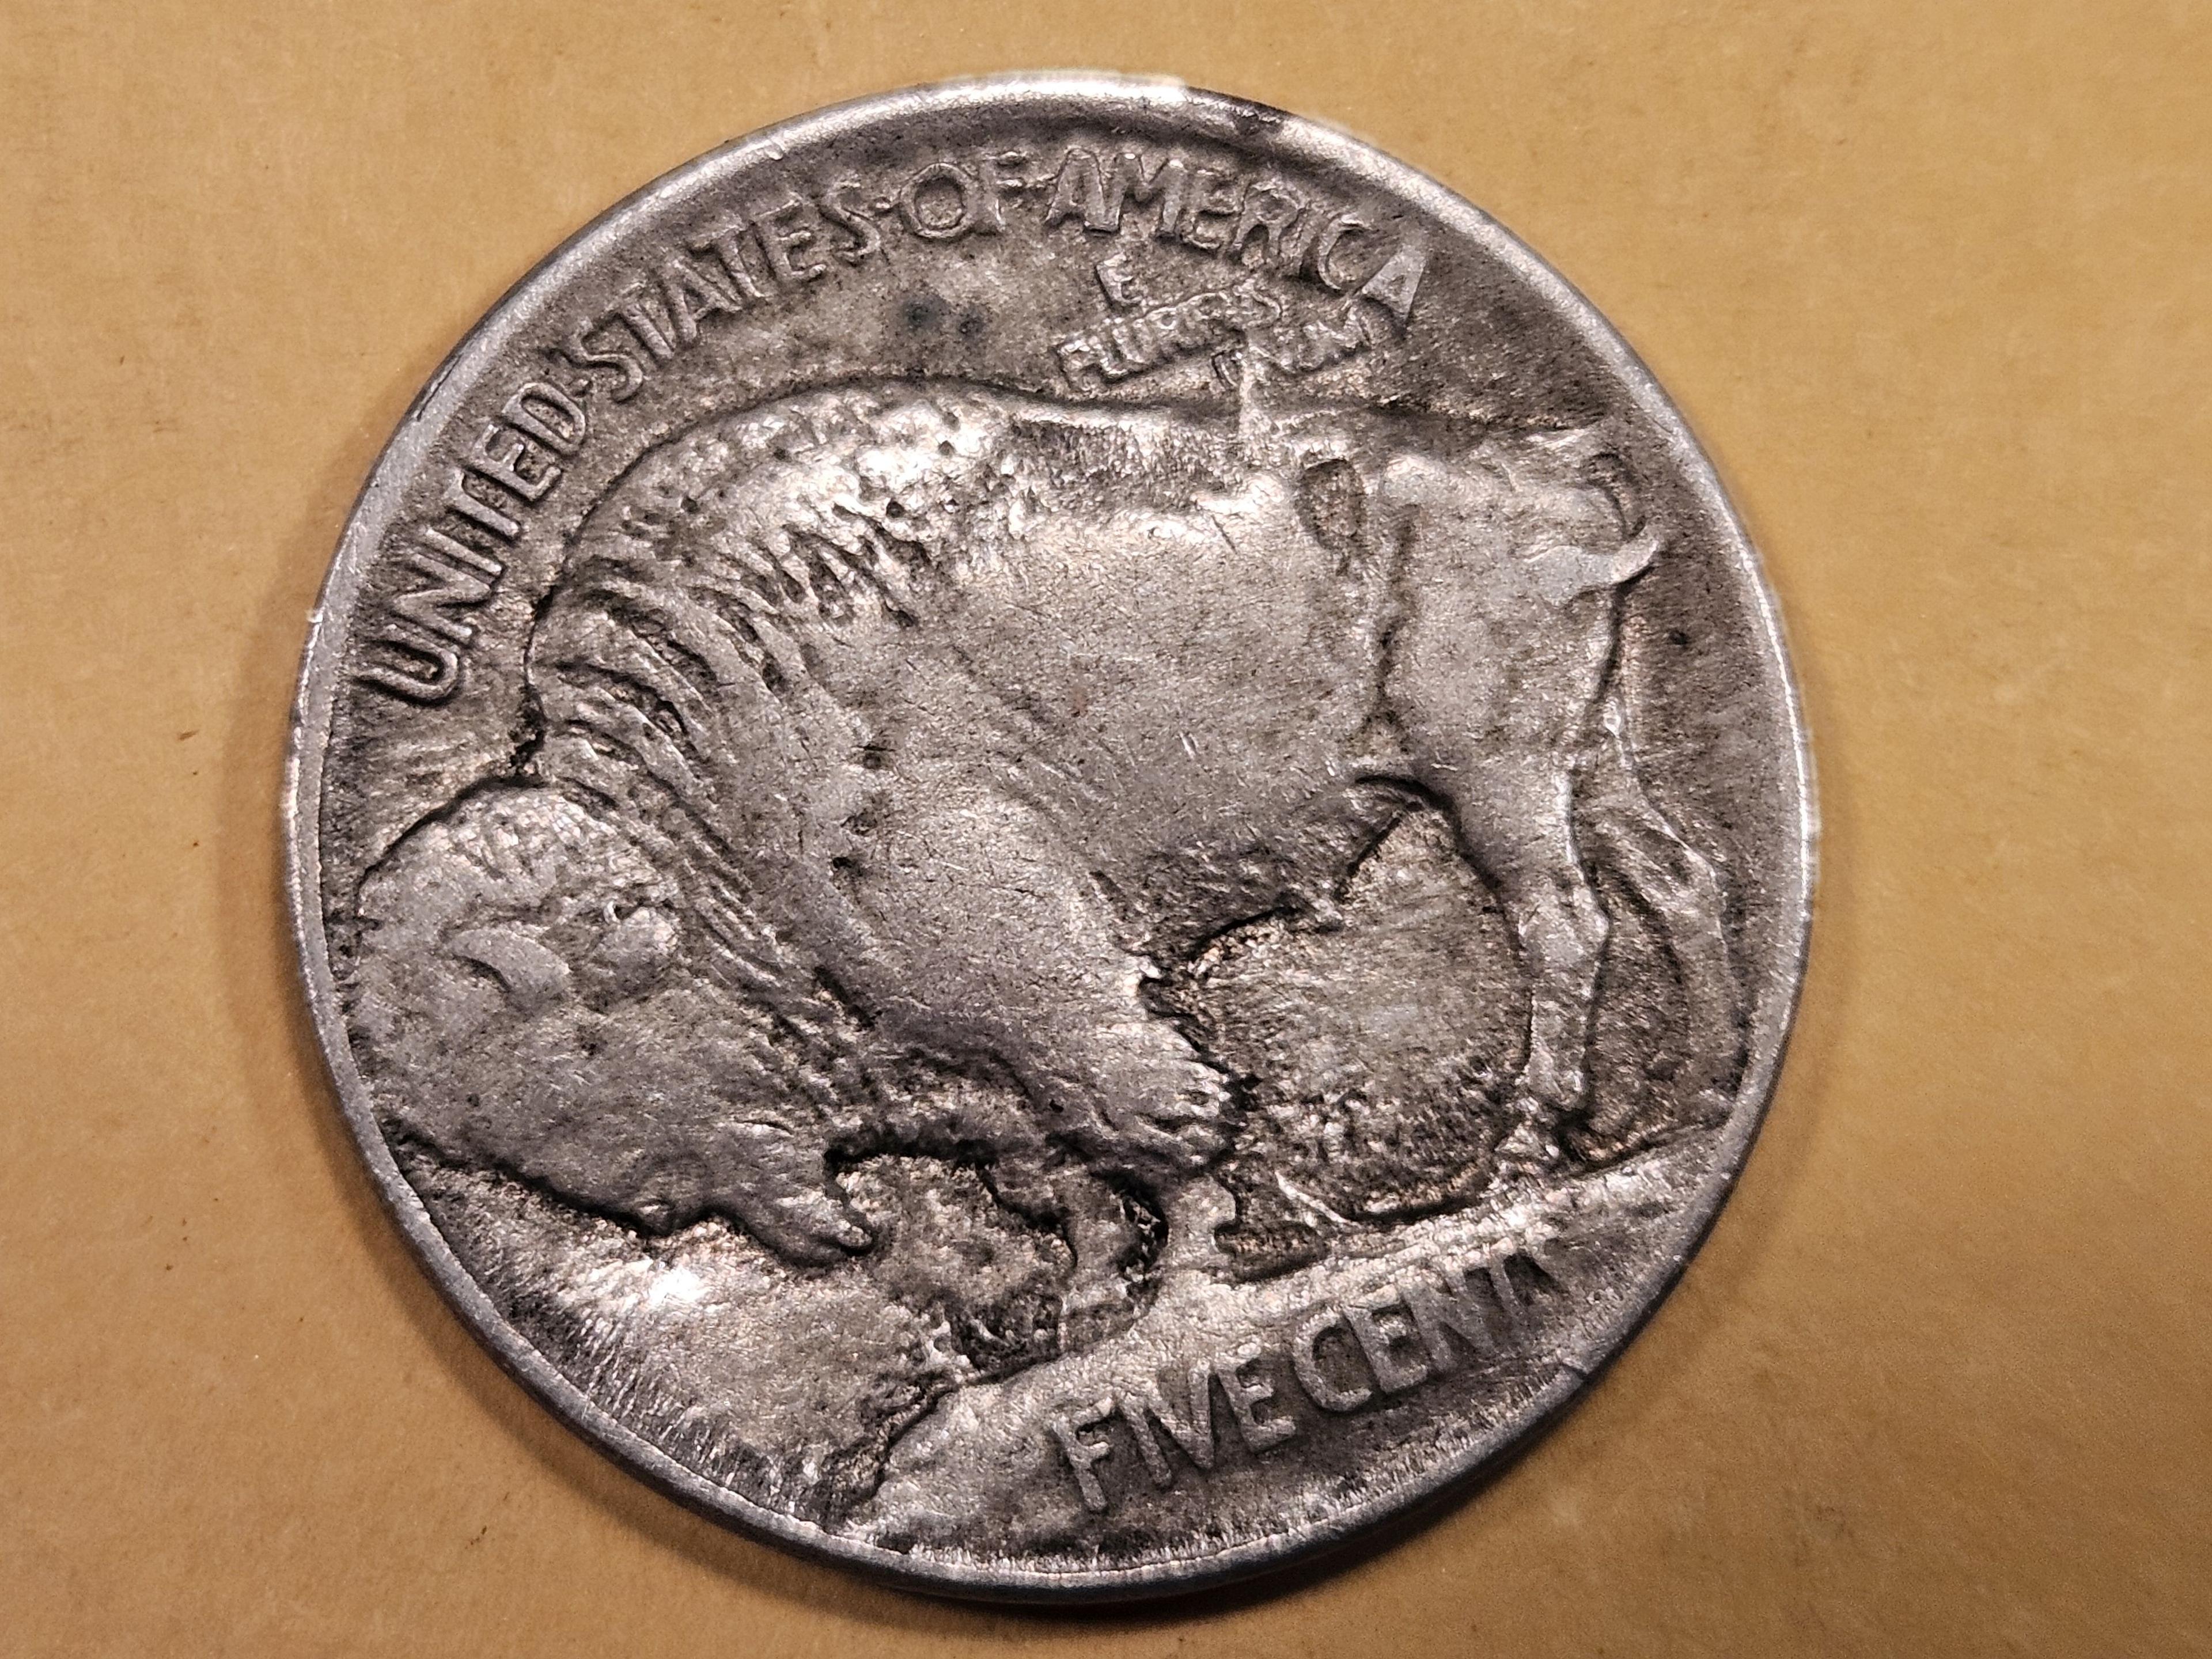 1913 Type 1 Buffalo Nickel in Extra Fine